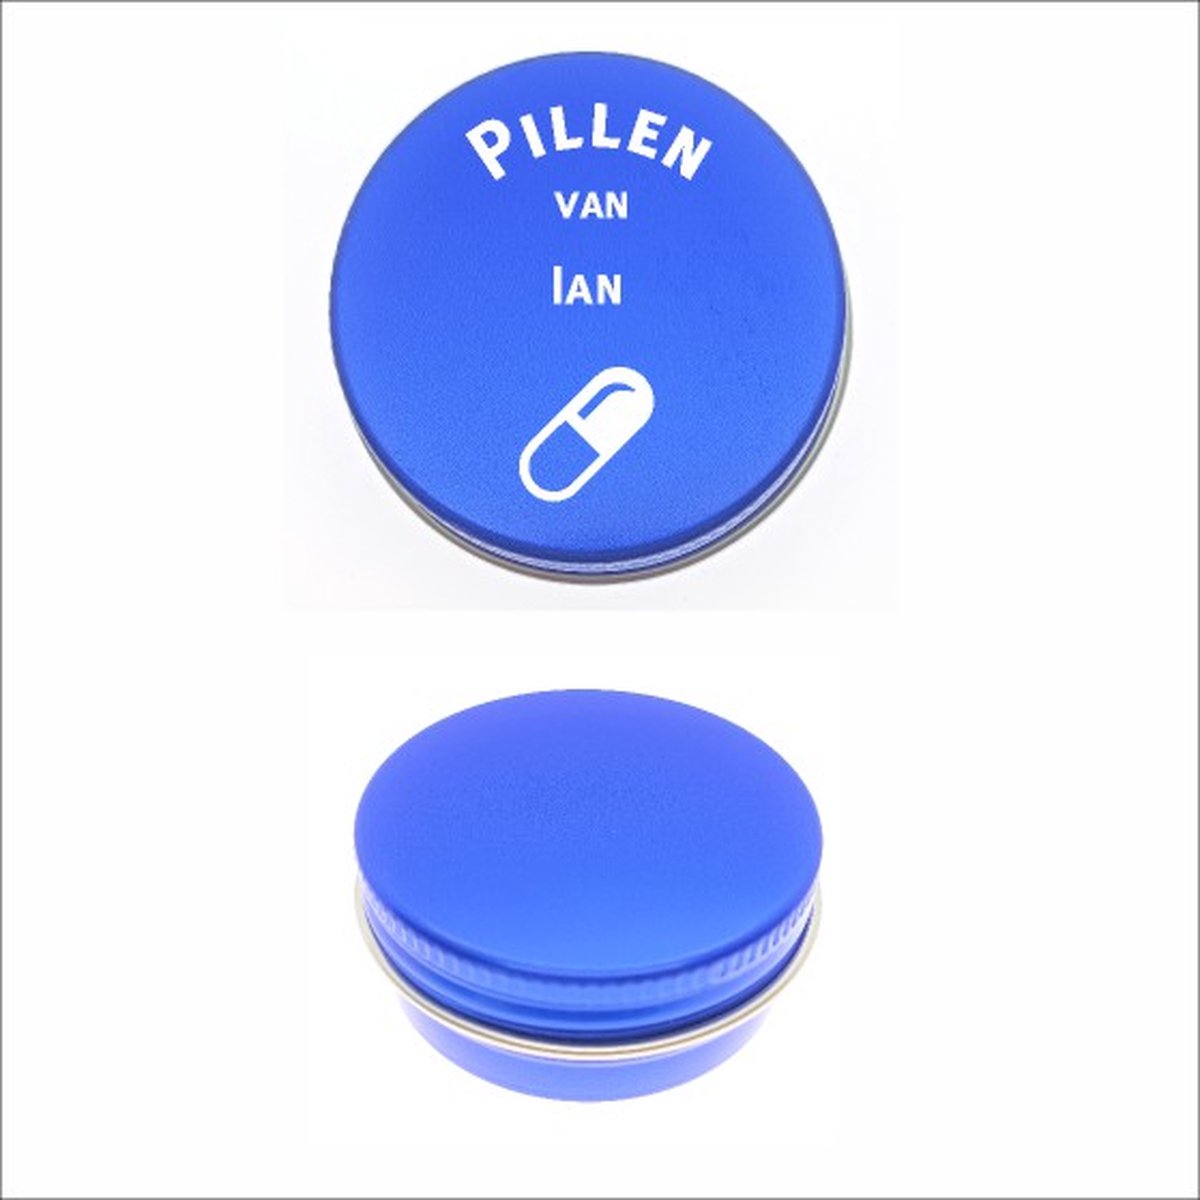 Pillen Blikje Met Naam Gravering - Ian